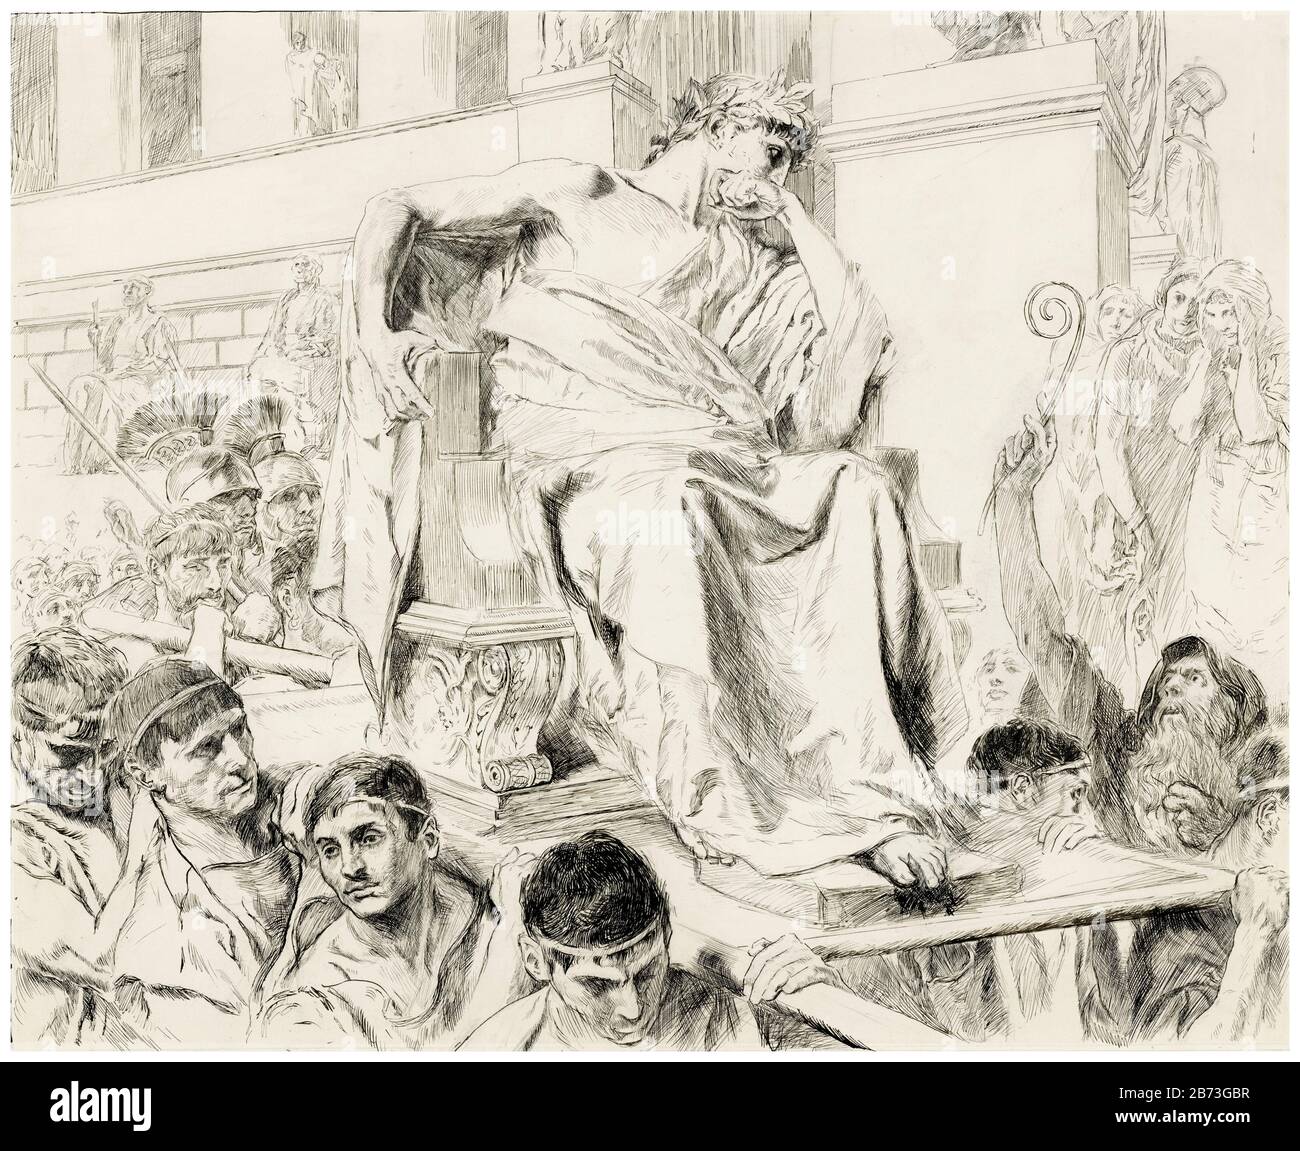 Les Ides de mars sont venus, Act III: Scène I, Julius César, illustration du 20ème siècle de l'abbaye d'Edwin Austin, vers 1906 Banque D'Images